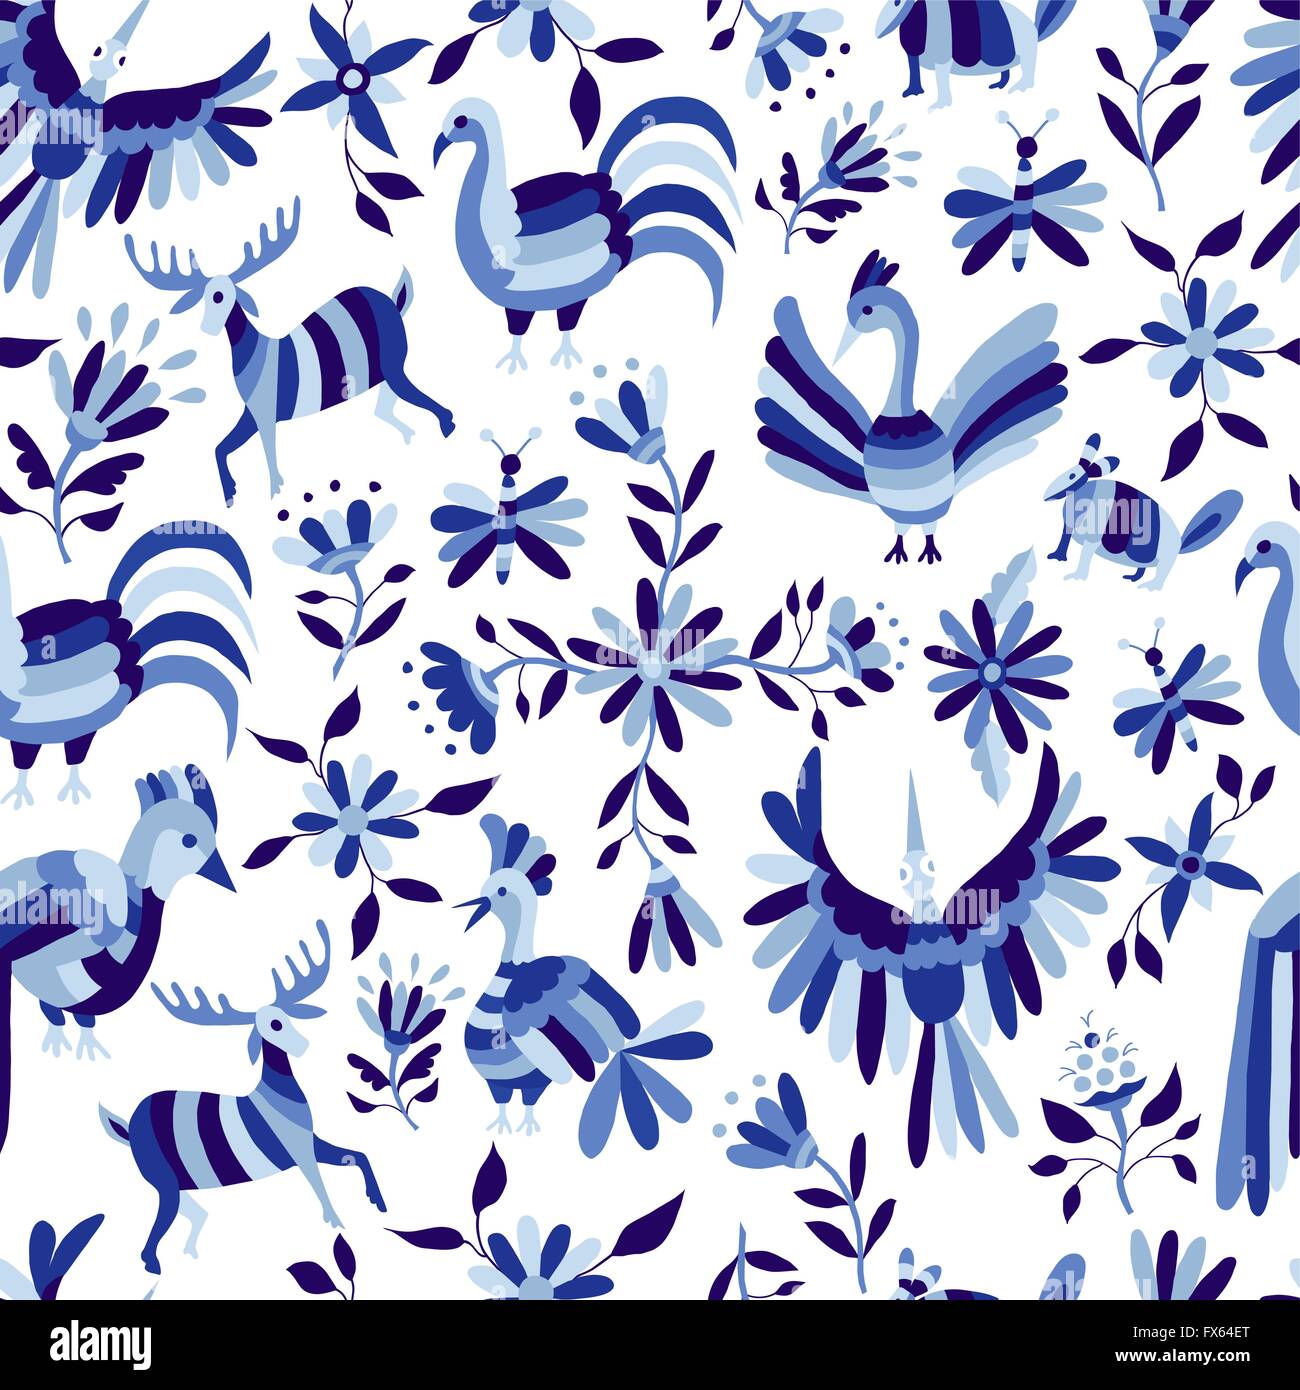 Vintage-Stil Natur nahtloses Muster, Tiere und Blumen Design in indigo blau. EPS10 Vektor. Stock Vektor